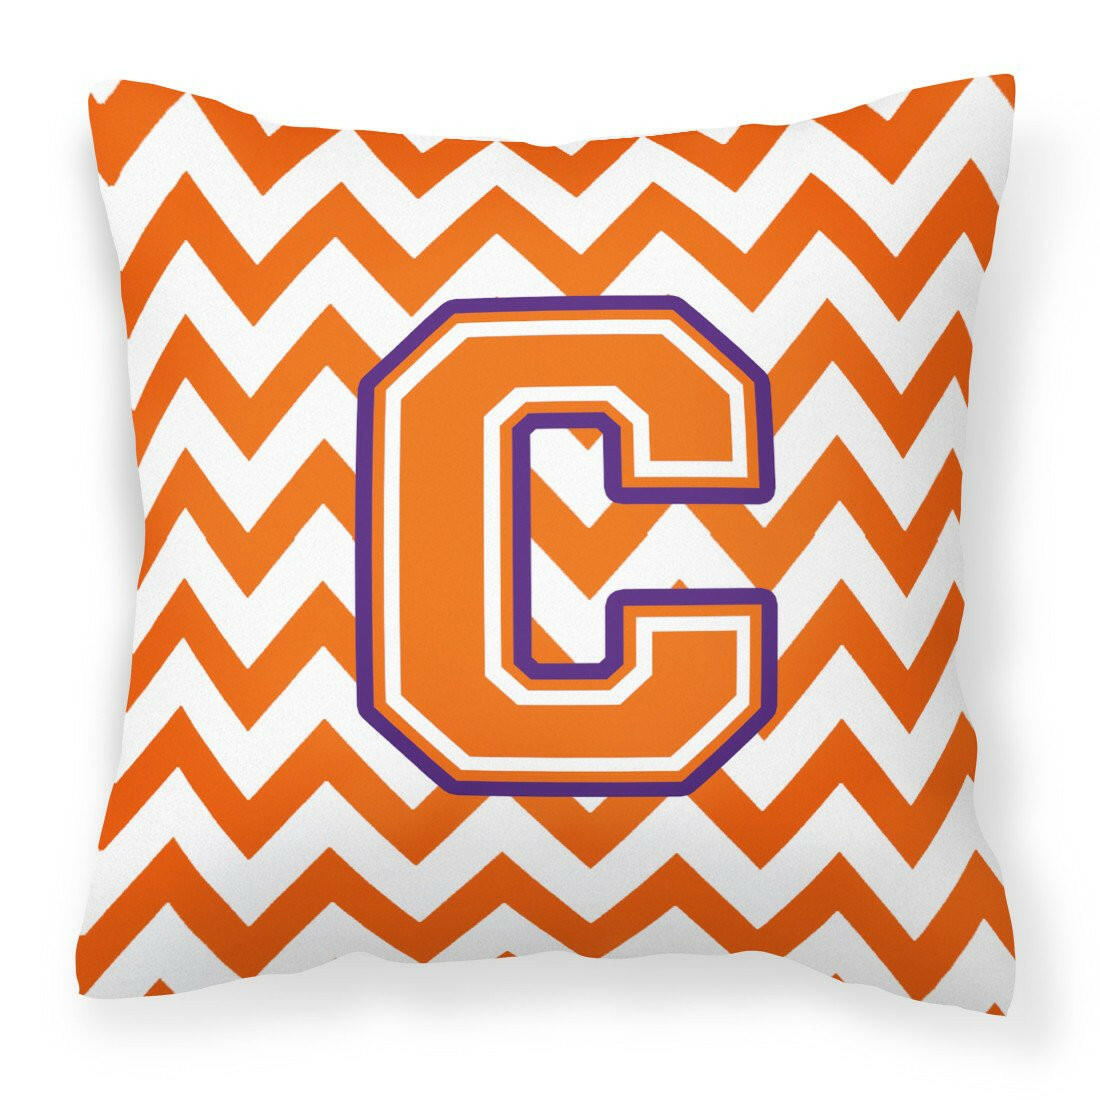 Letter C Chevron Orange and Regalia Fabric Decorative Pillow CJ1062-CPW1414 by Caroline's Treasures